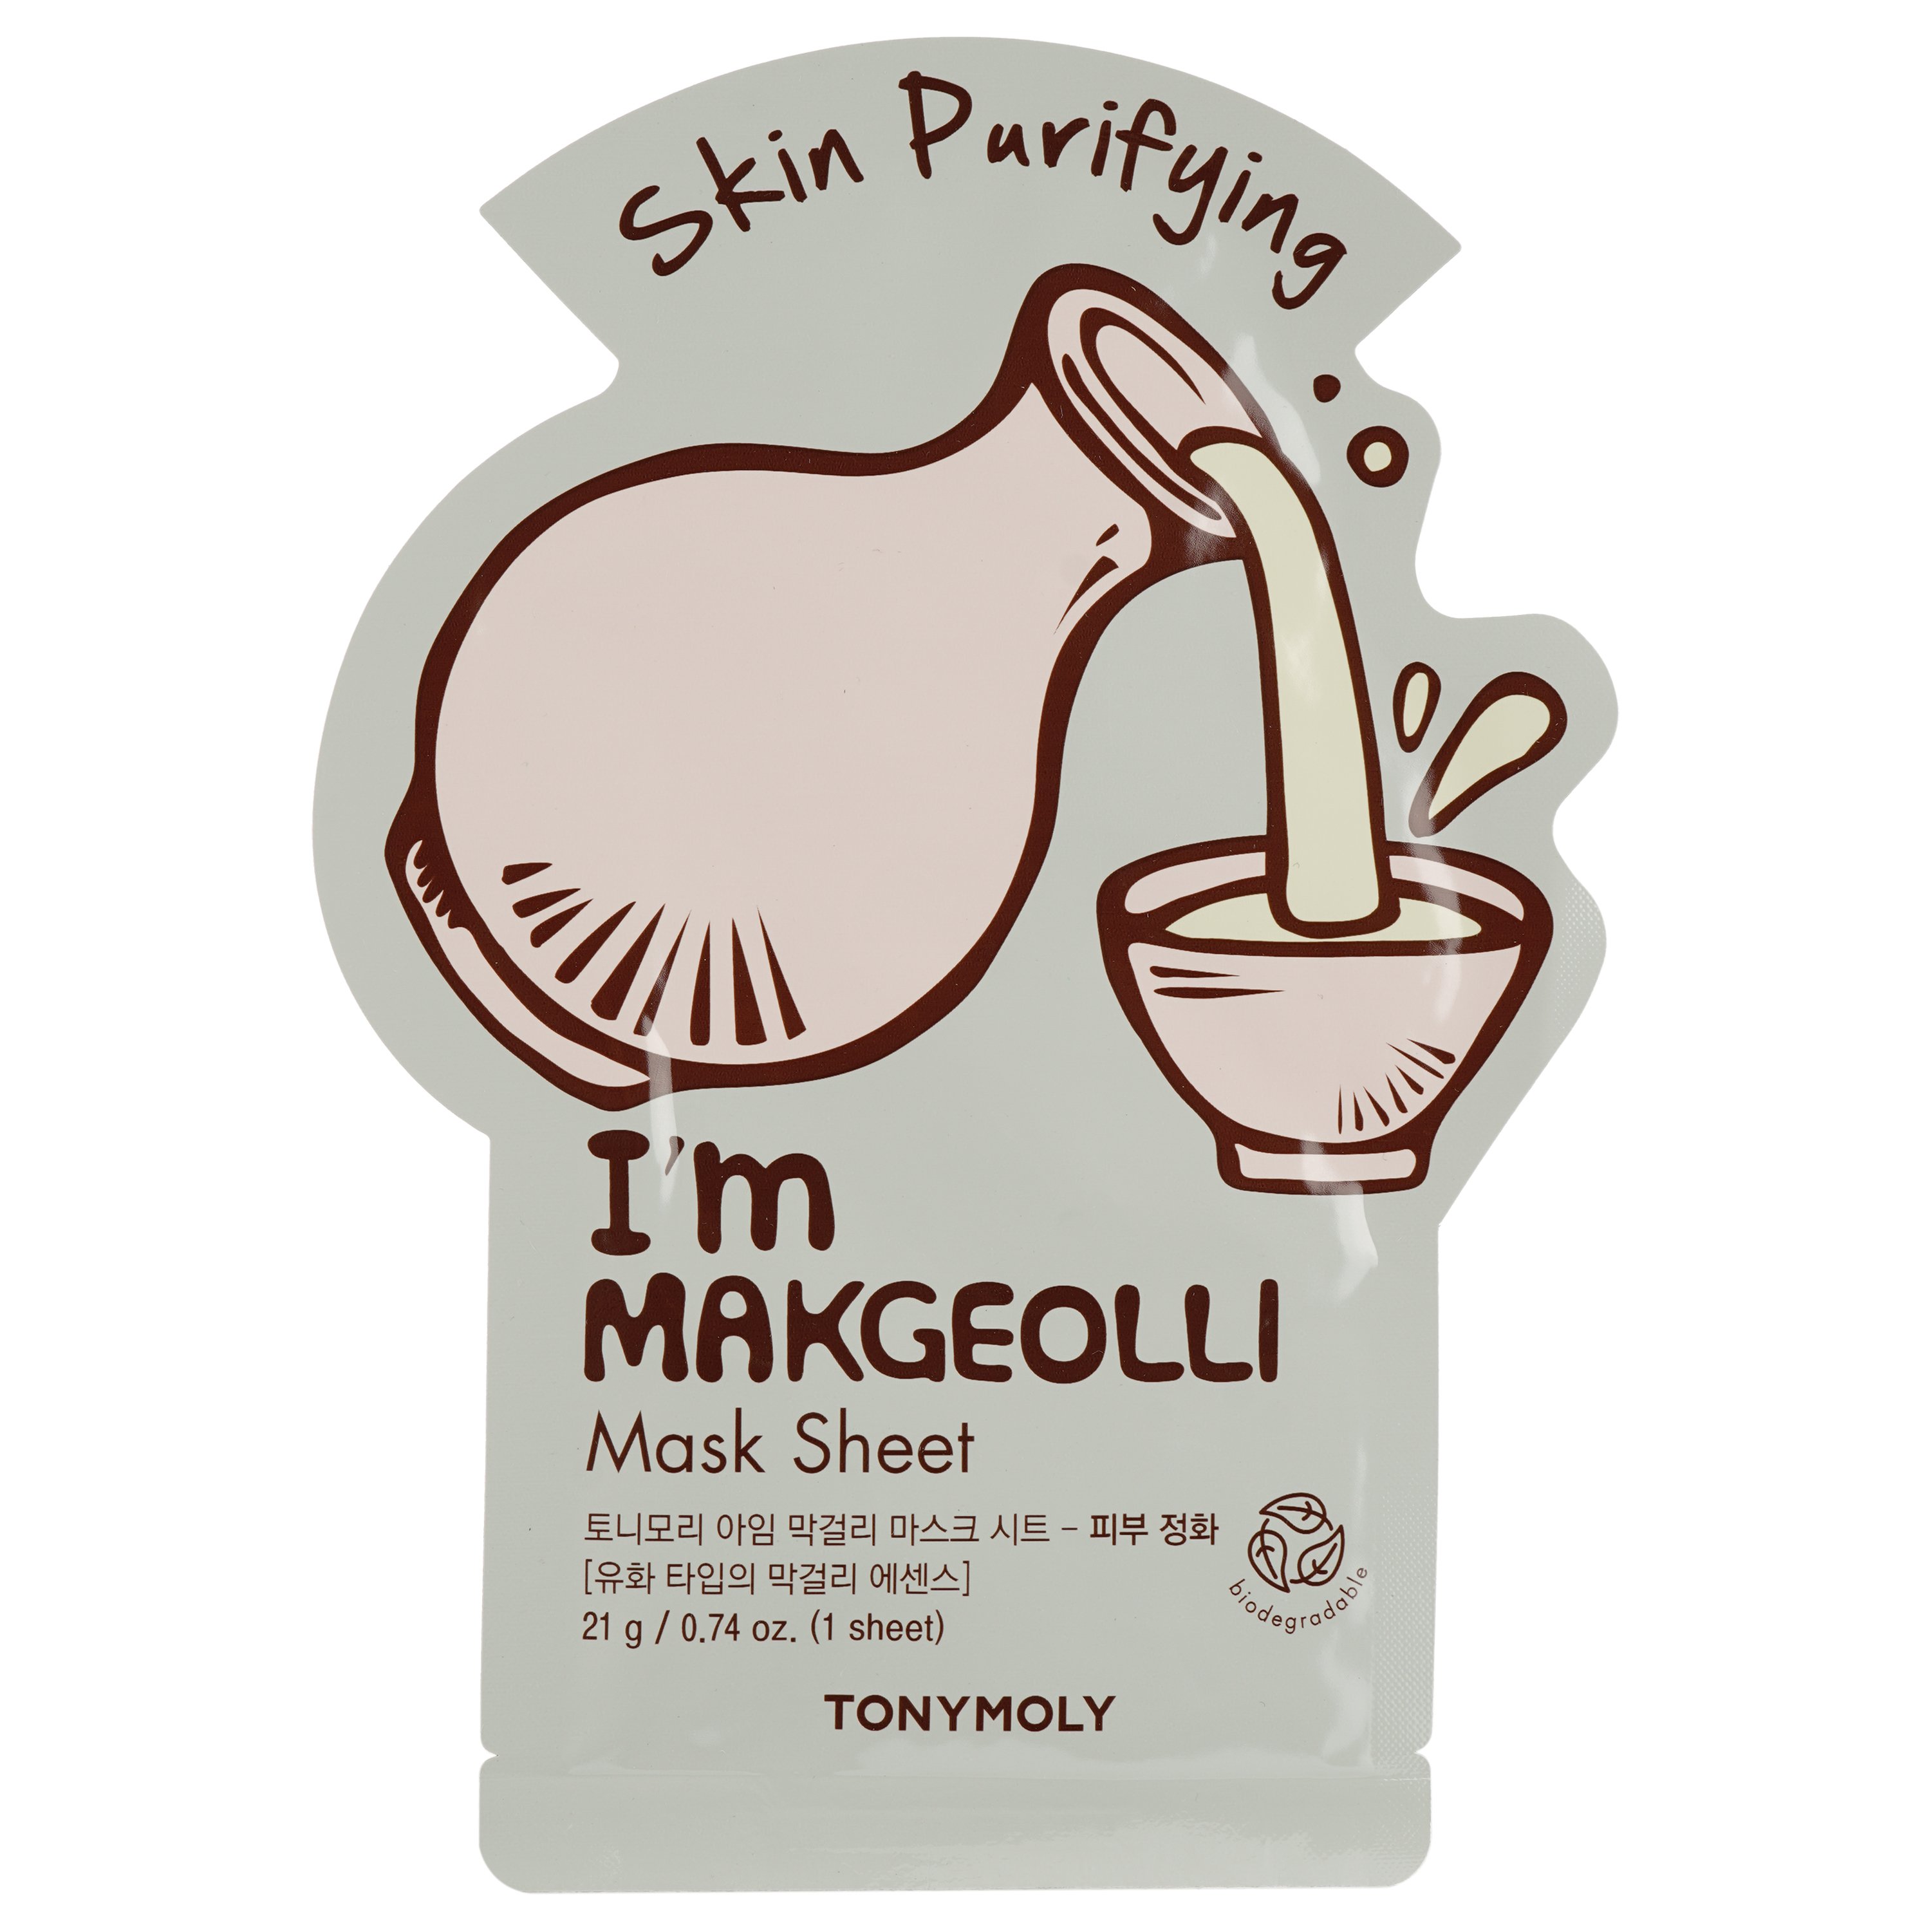 Маска тканевая для лица Tony Moly I’m Makgeolli Mask Sheet Skin Purifying Макколи, 21 мл - фото 1